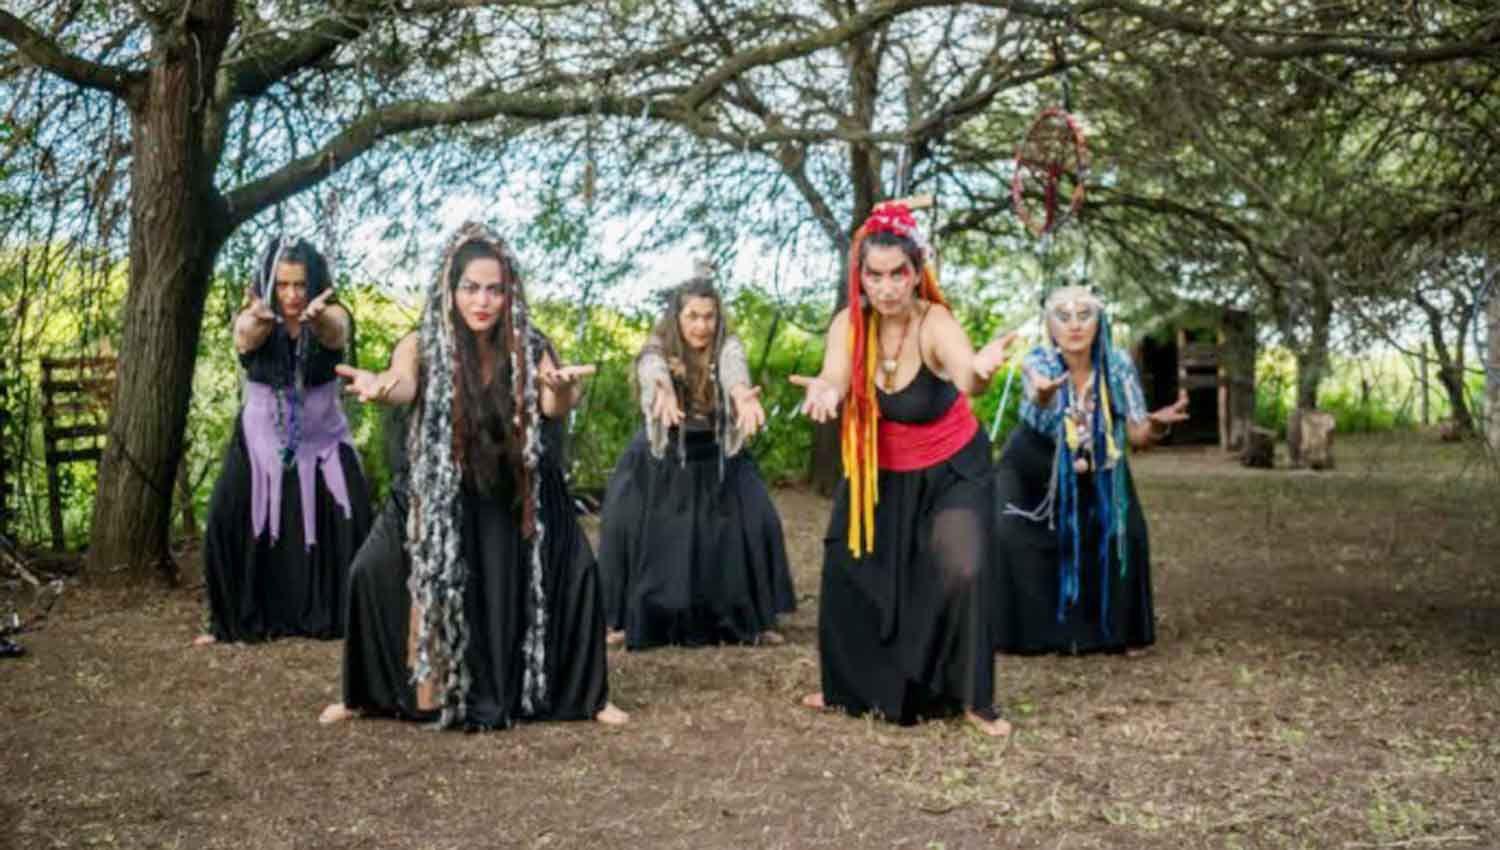 VIDEO  Cinco actrices santiaguentildeas hablaraacuten sobre mitos y leyendas en la obra teatral ldquoWillaqkunardquo